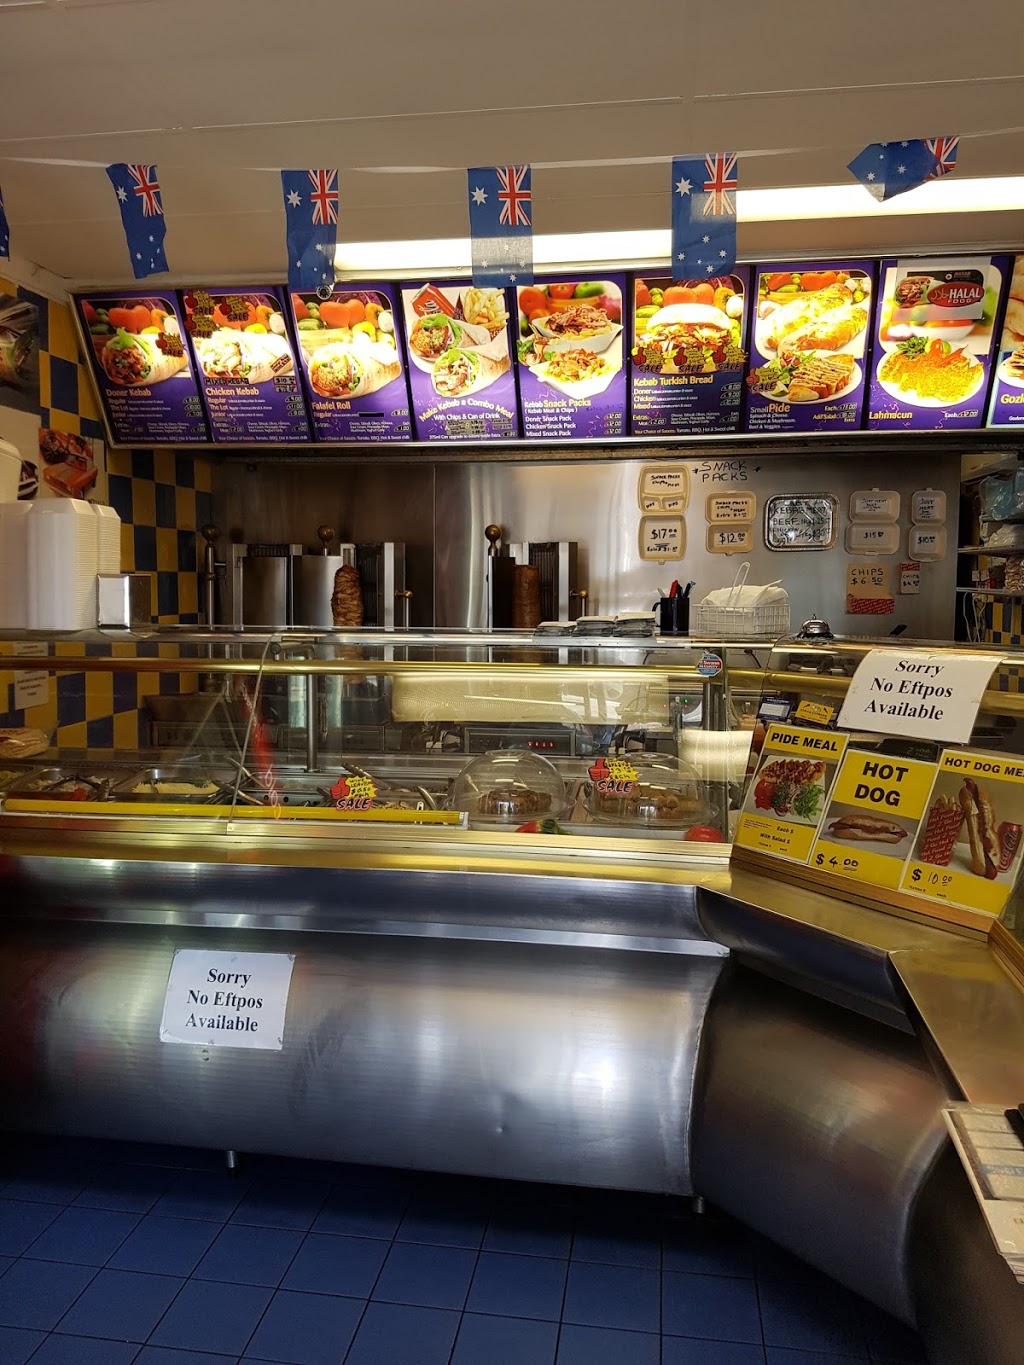 Kebab Express Cafe 2000 | meal takeaway | 6/72-74 King St, Warrawong NSW 2502, Australia | 0242740044 OR +61 2 4274 0044